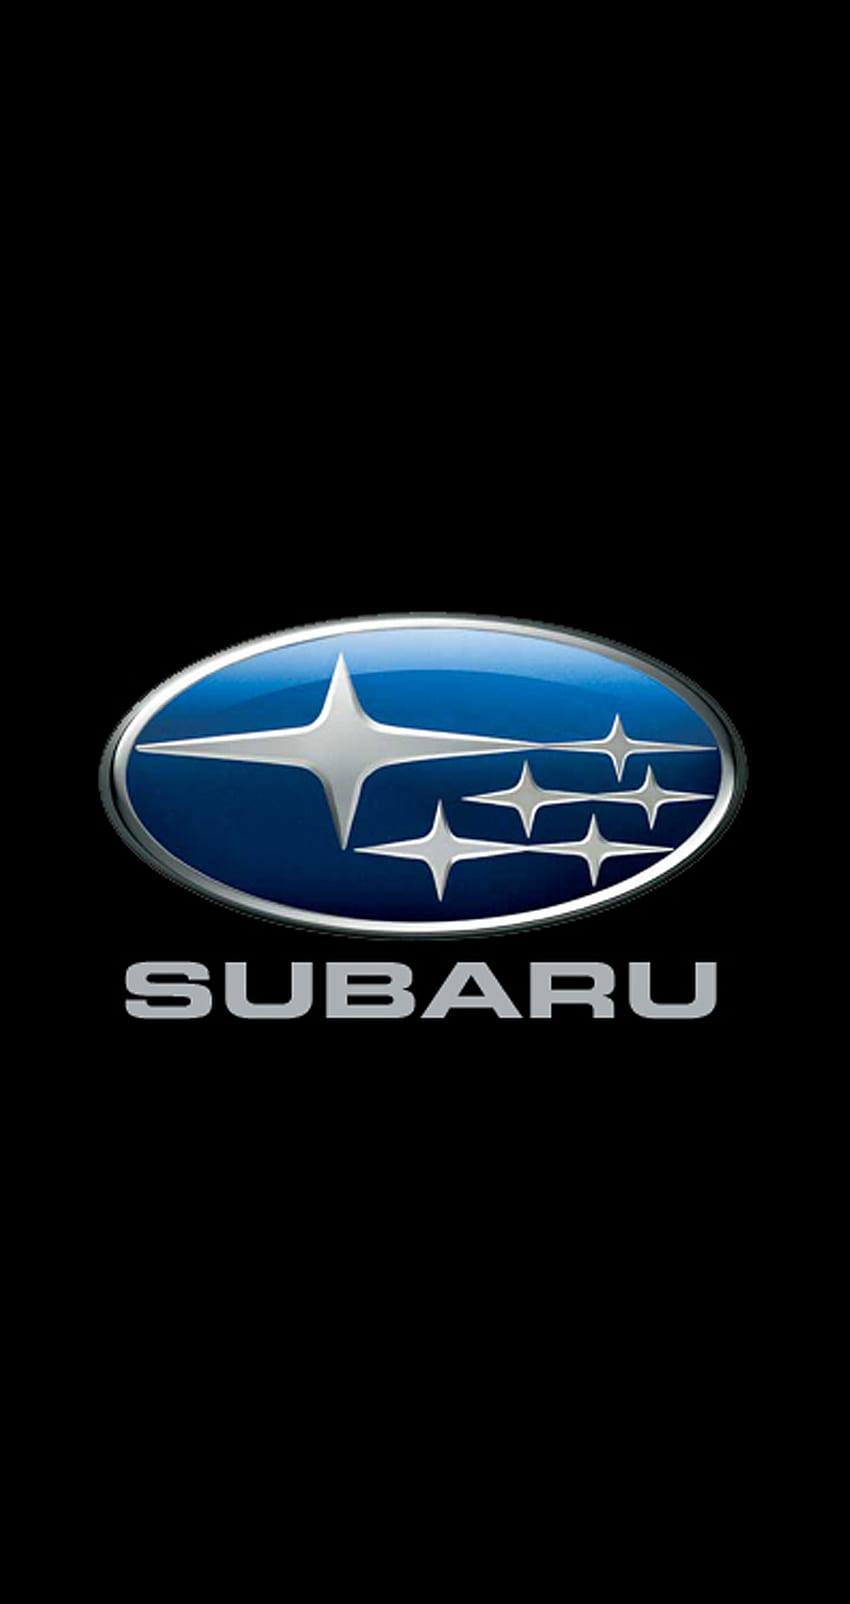 Compartir Subaru iPhone 6 852 x 1608 - 4393712 - coche rally subaru. móvil9, Subaru 6 Plus fondo de pantalla del teléfono